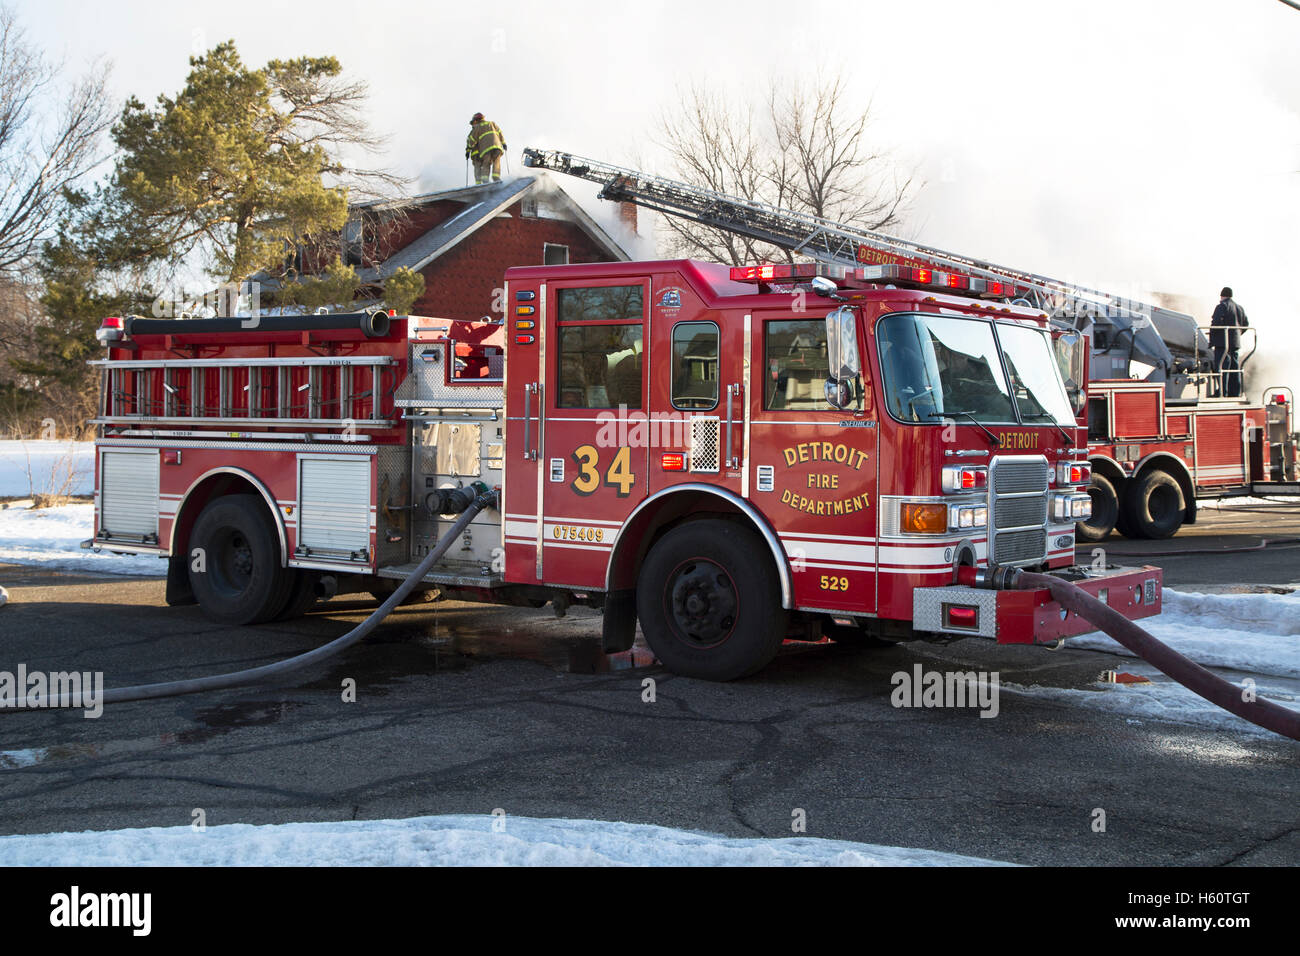 Aerial truck, Engine Company, et d'extinction d'incendie Les pompiers, Detroit, Michigan, USA Banque D'Images